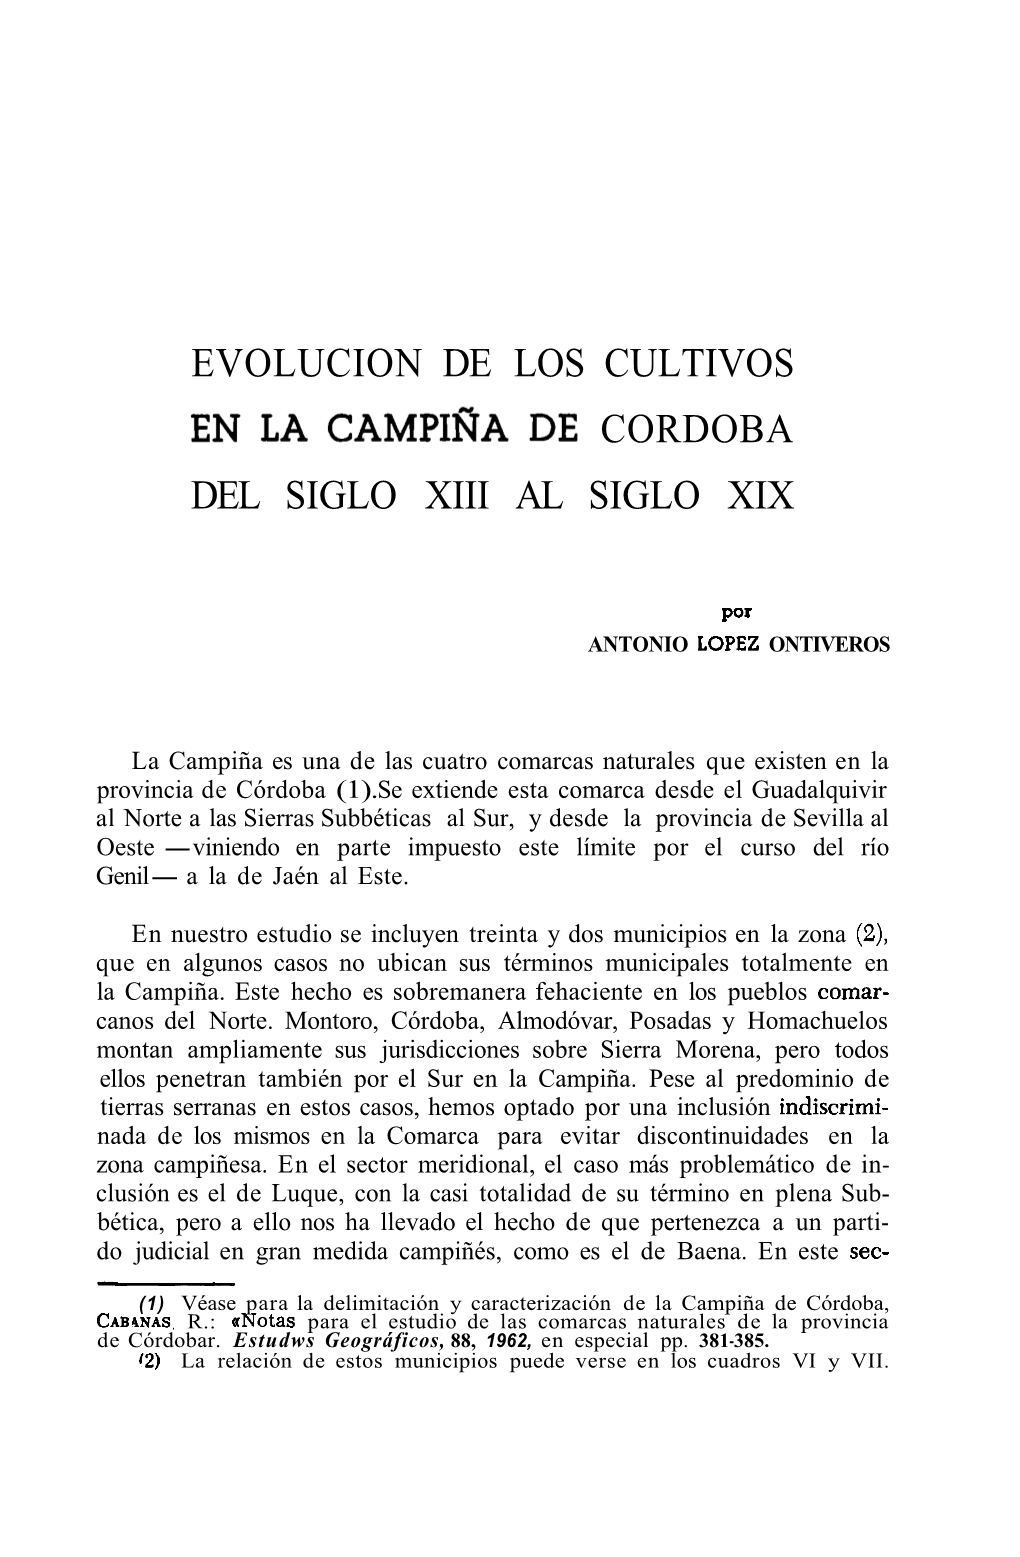 Evolucion De Los Cultivos Cordoba Del Siglo Xiii Al Siglo Xix